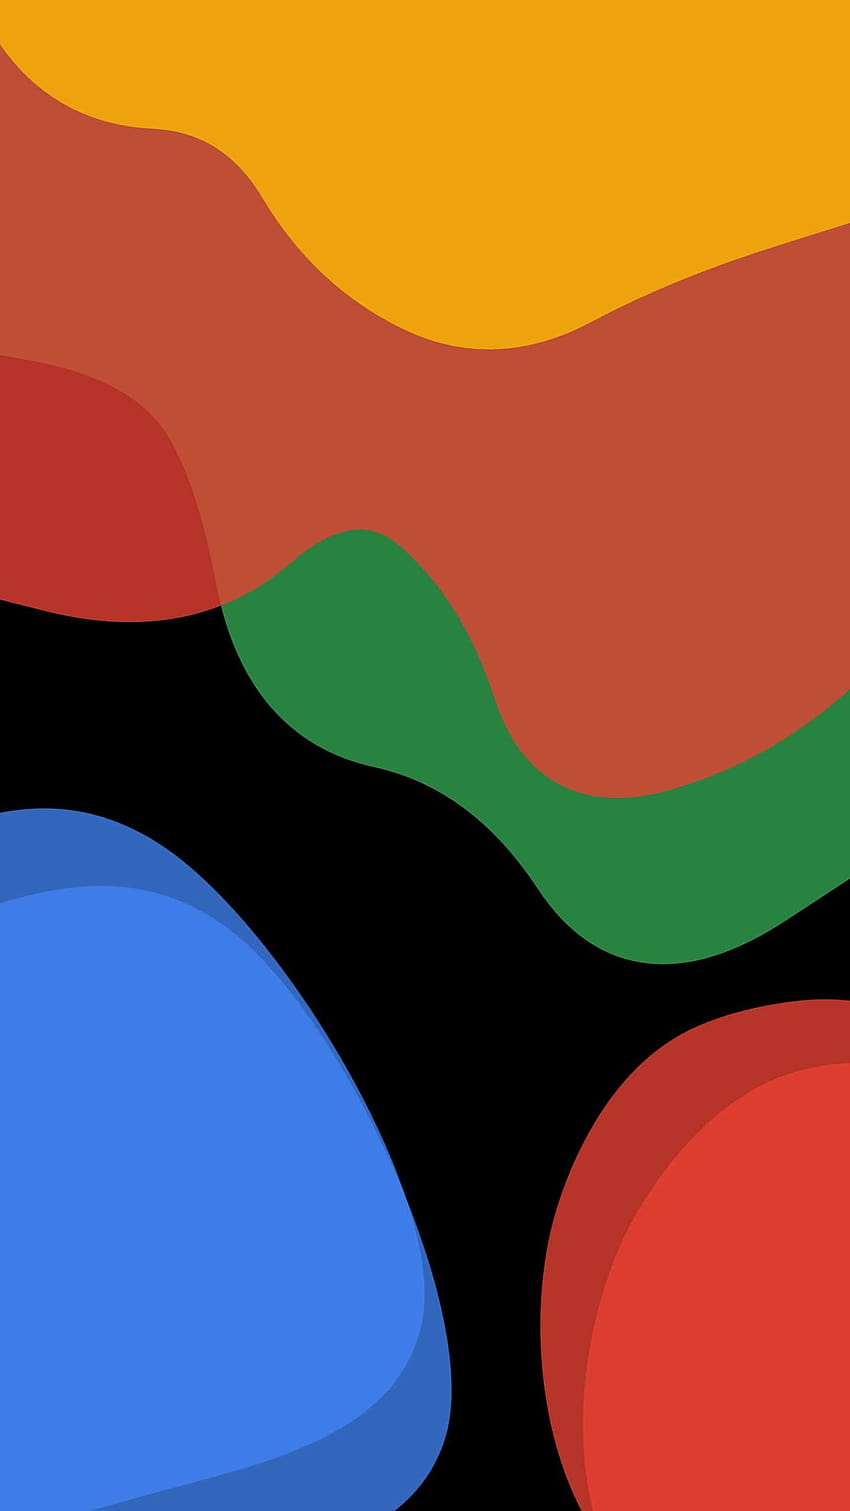 Chia sẻ với anh em bộ hình nền mặc định của Google Pixel 5